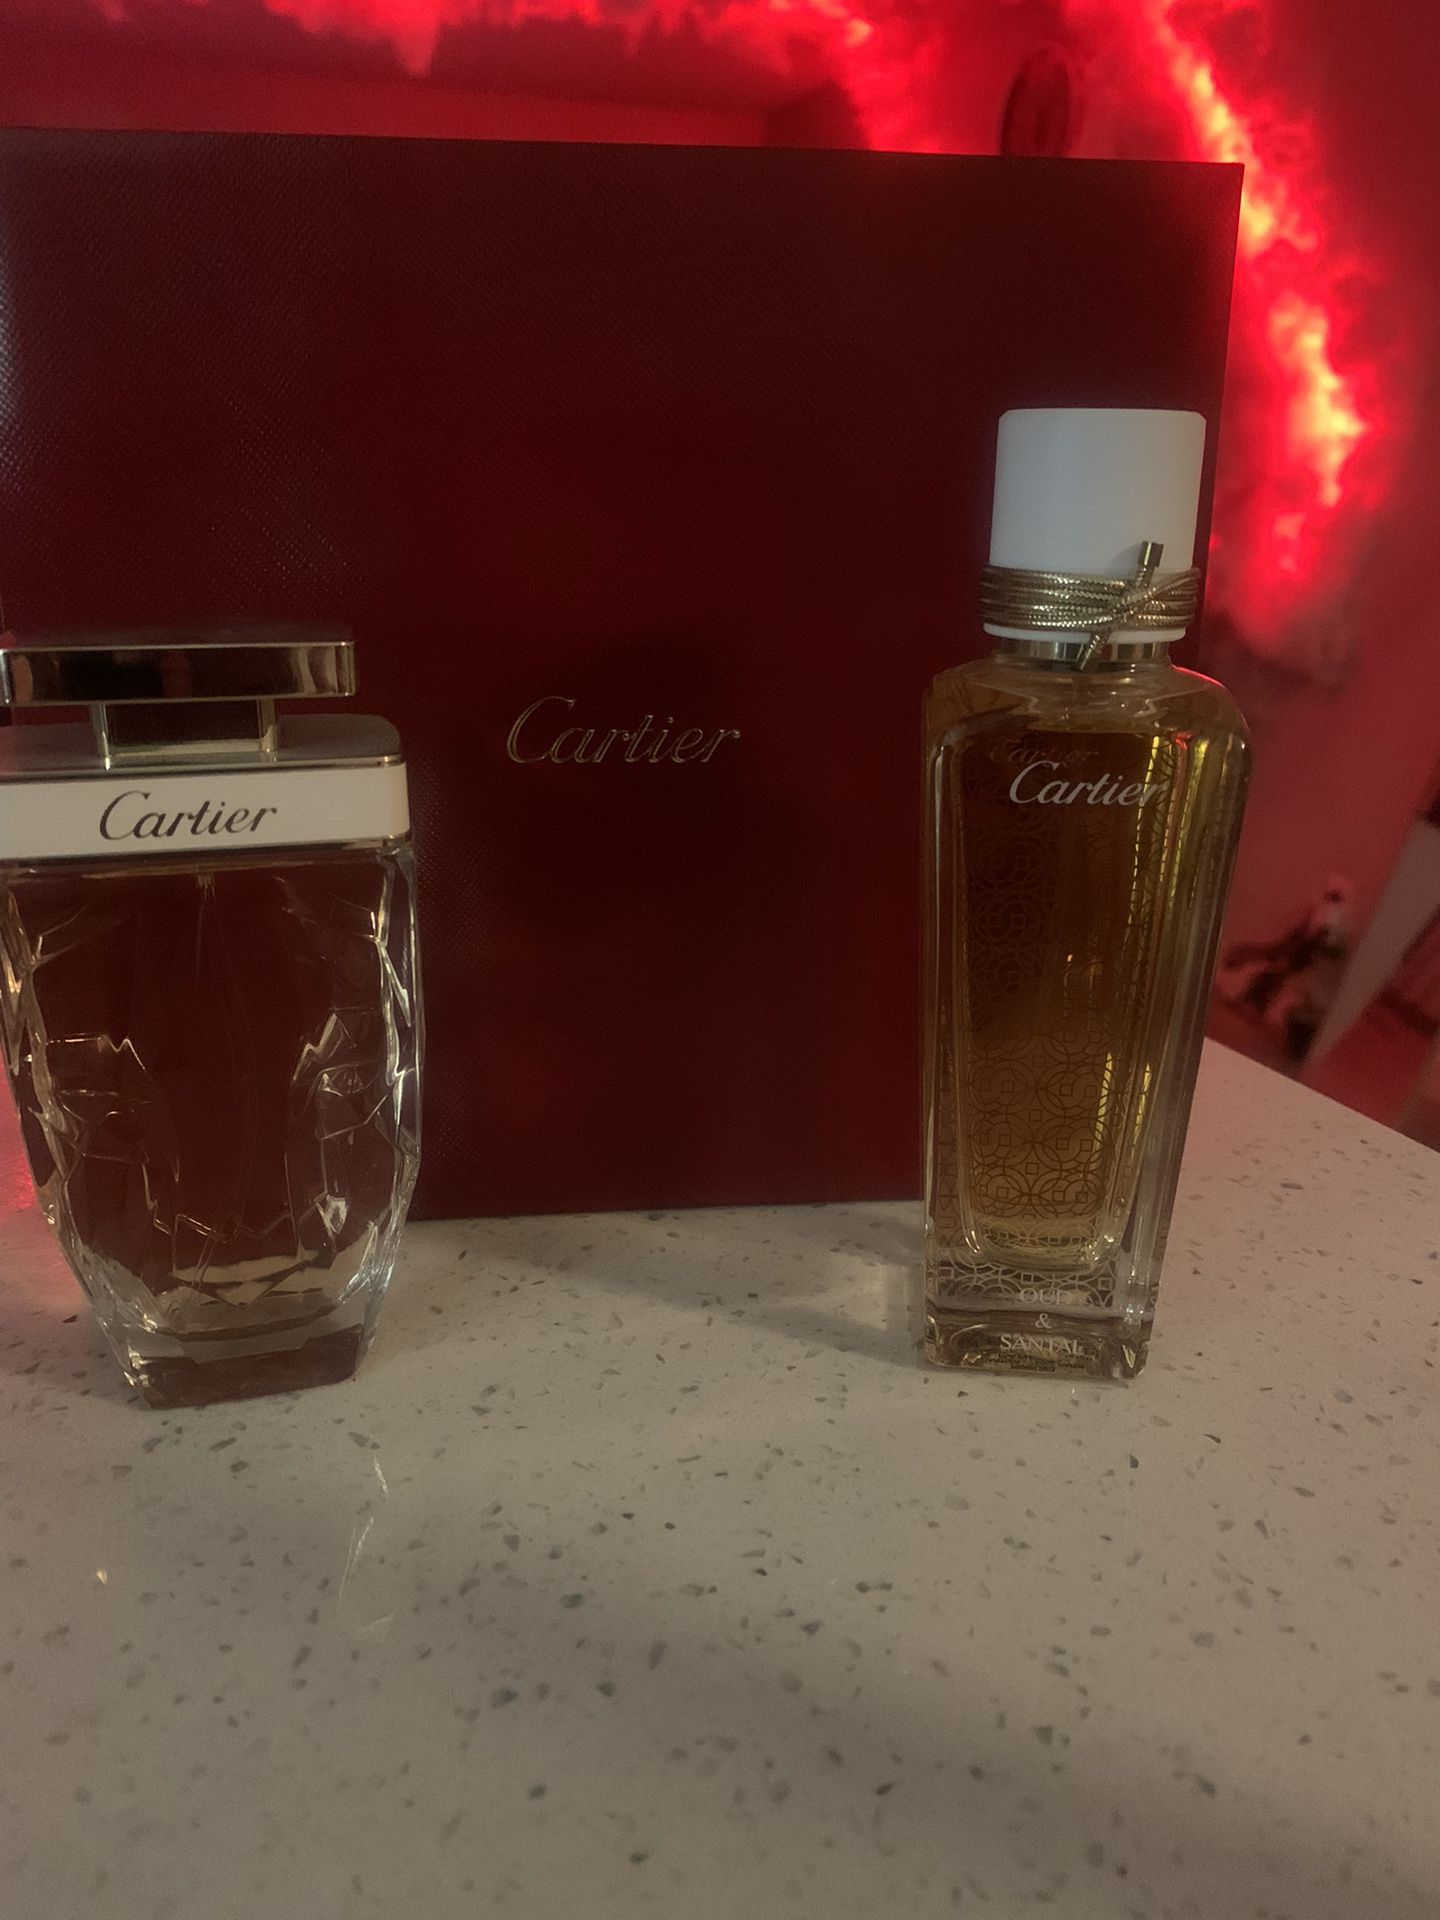 Cartier fragrance